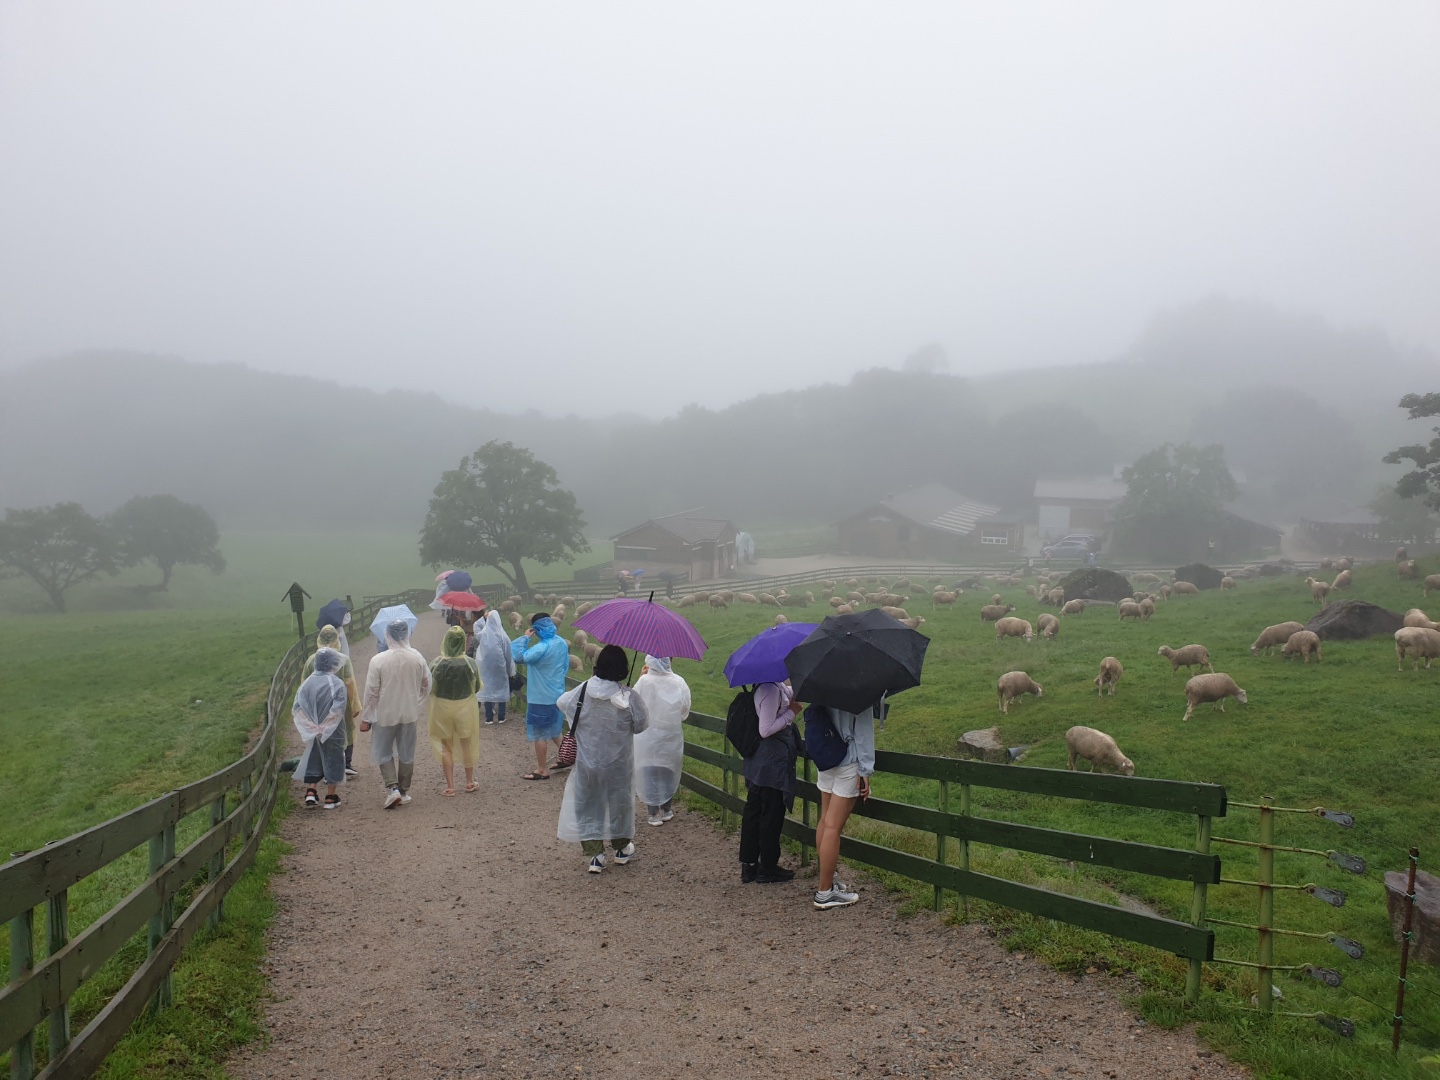 비가 오는 양떼목장을 우산을 들고 걸어다니는 사람들의 모습이다.